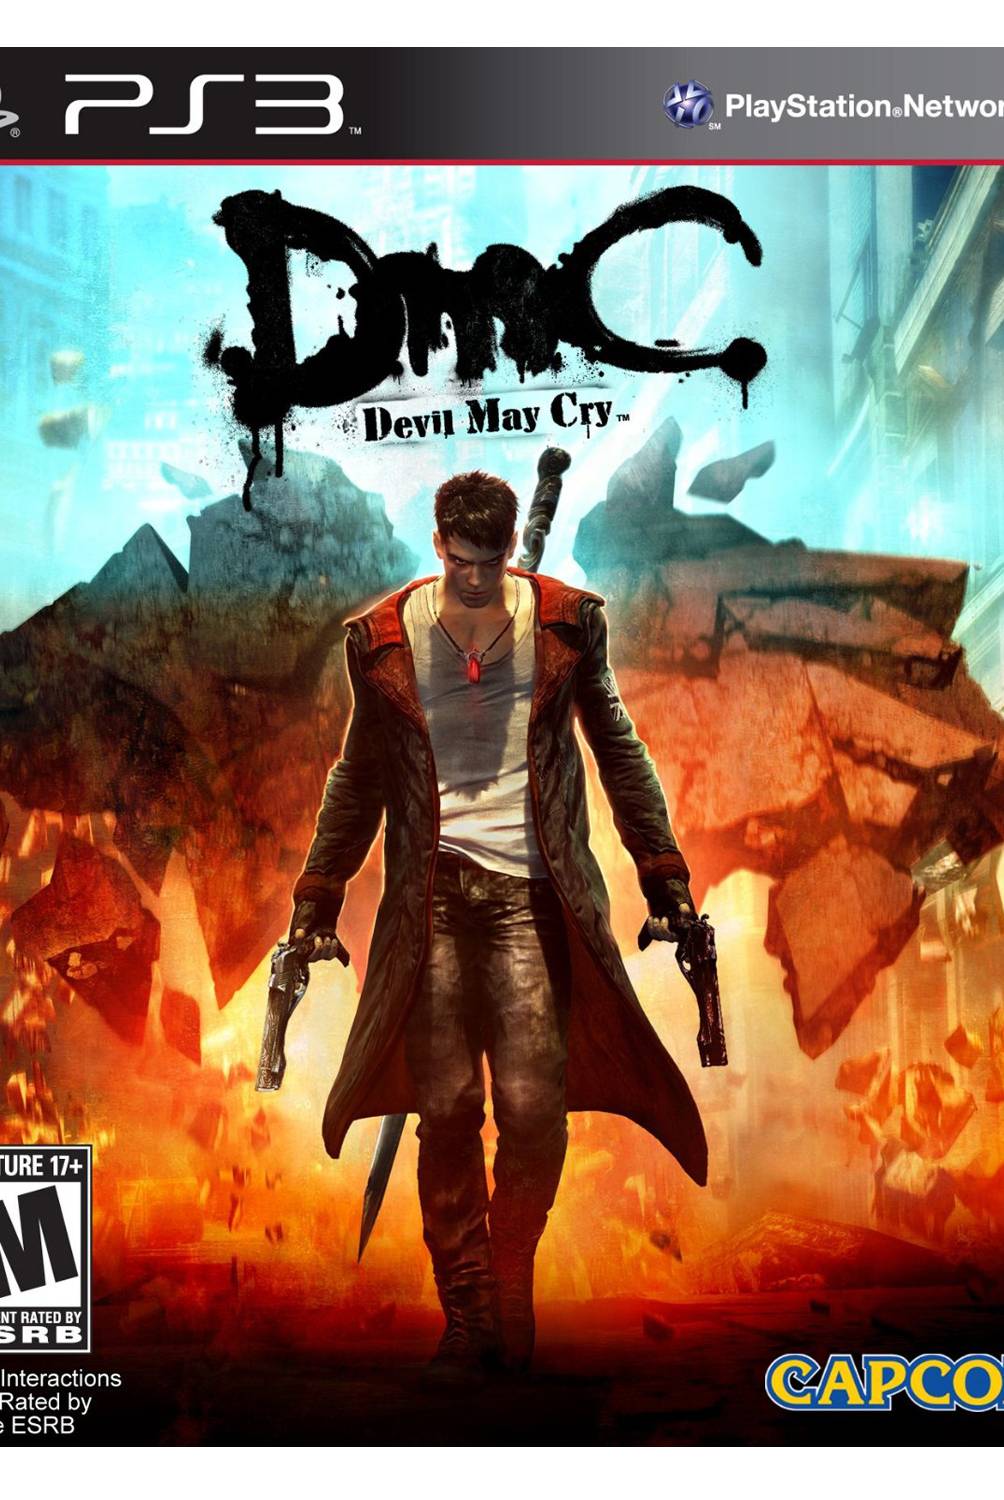 Capcom - Devil May Cry 2013 PS3